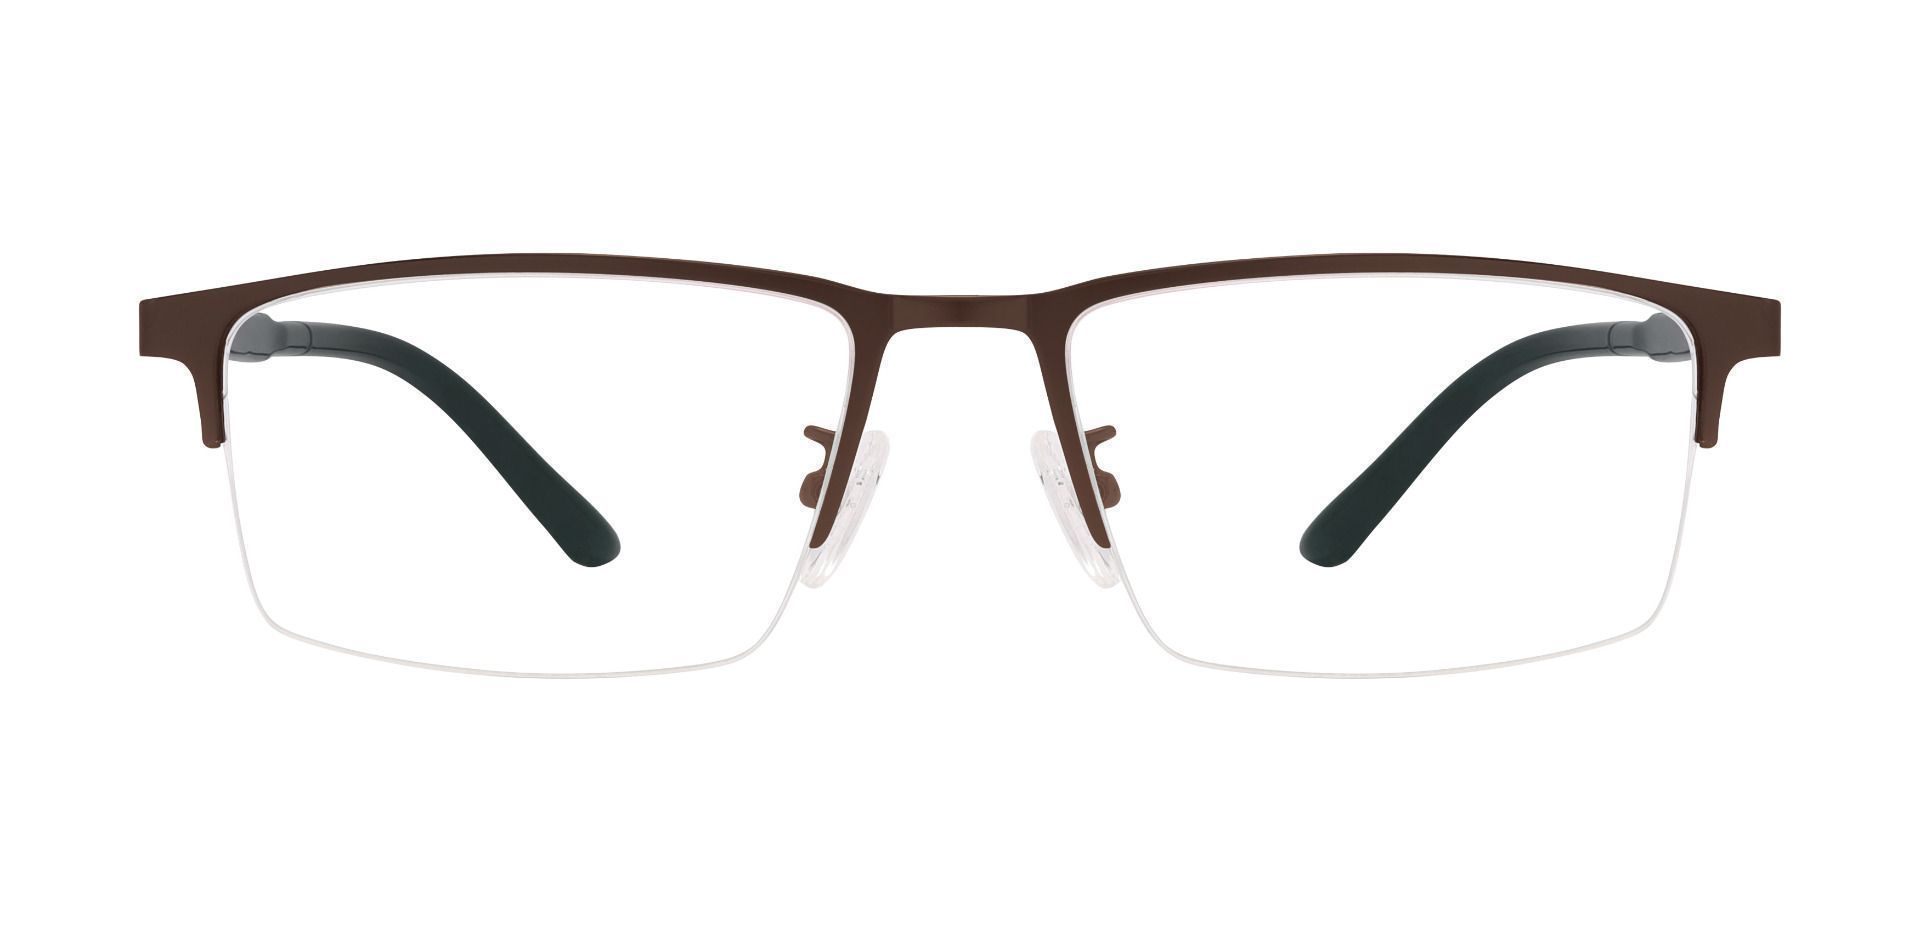 Terrell Rectangle Prescription Glasses - Brown